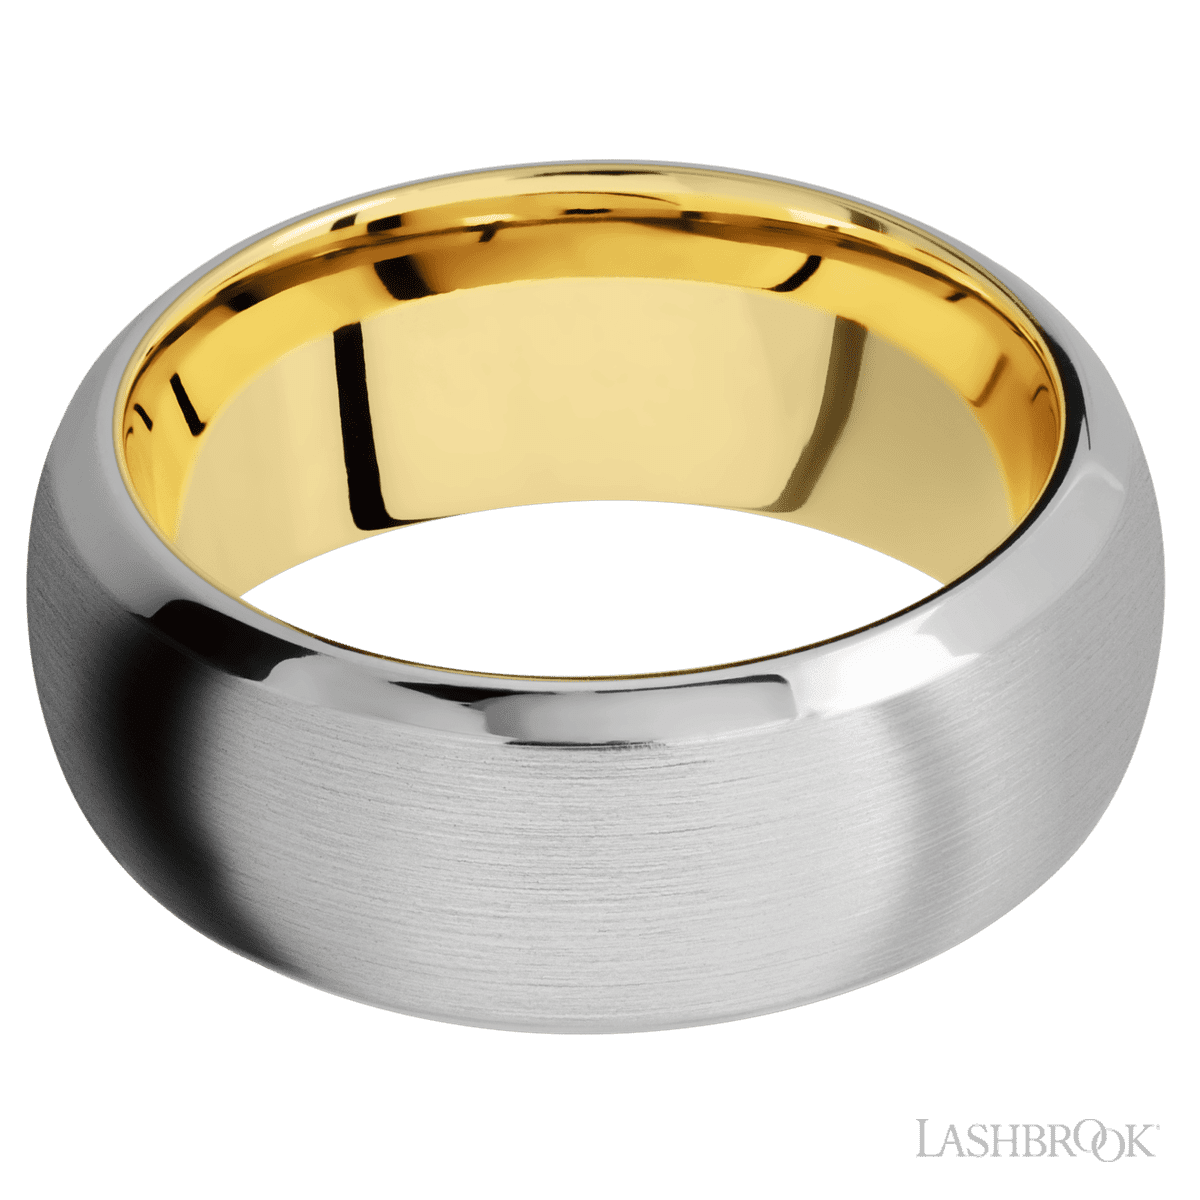 Lashbrook Ring Sizing Kit